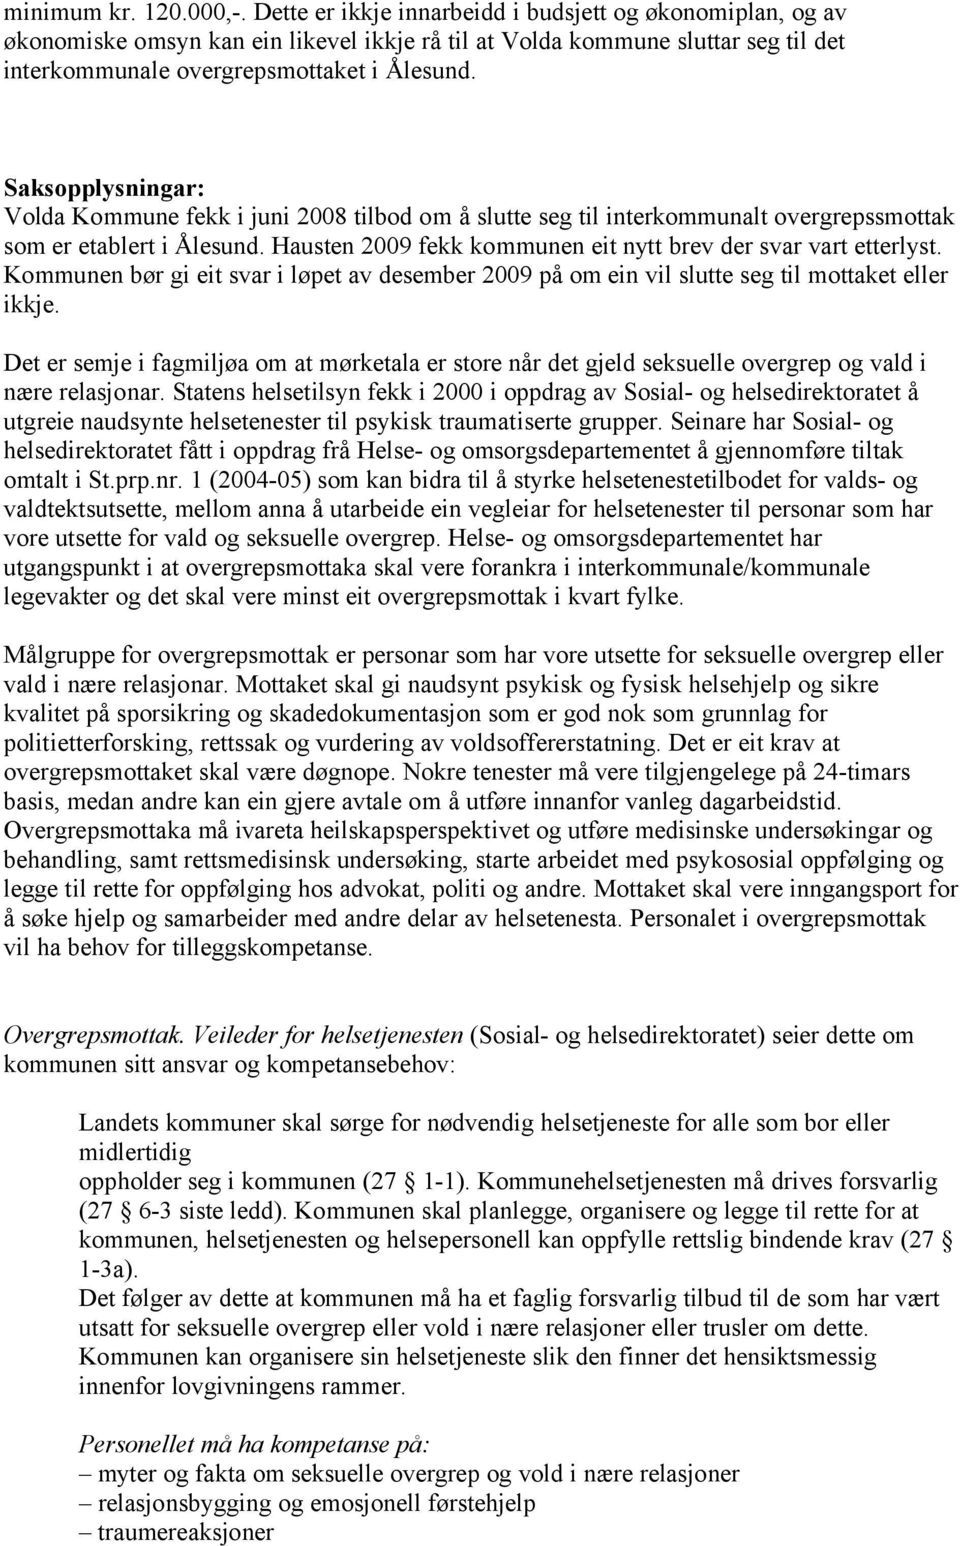 Saksopplysningar: Volda Kommune fekk i juni 2008 tilbod om å slutte seg til interkommunalt overgrepssmottak som er etablert i Ålesund. Hausten 2009 fekk kommunen eit nytt brev der svar vart etterlyst.